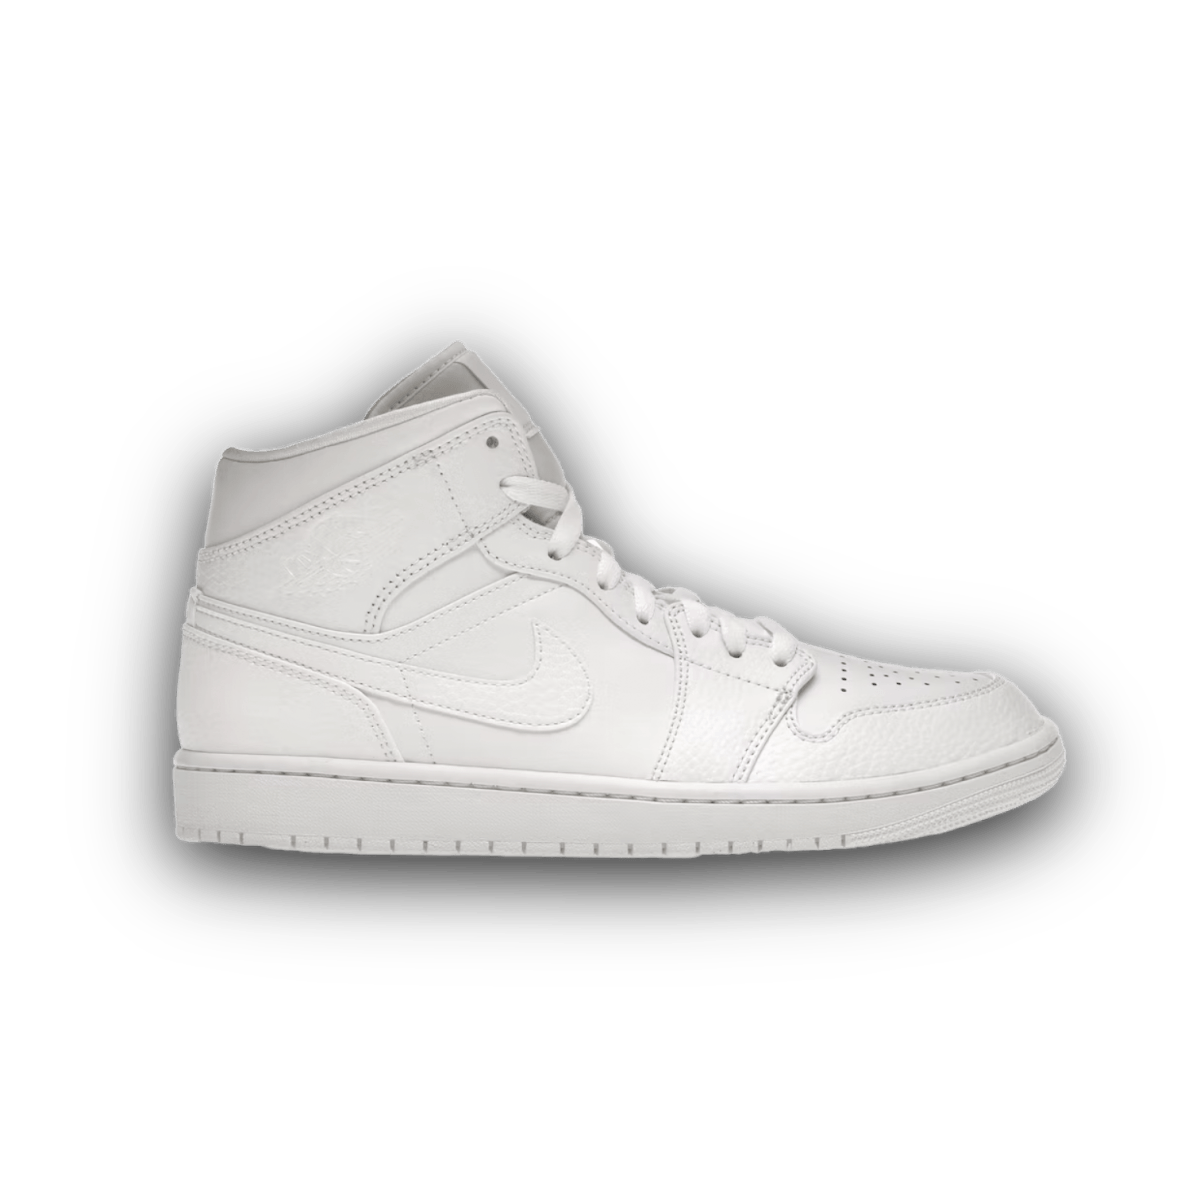 Jordan 1 Mid Triple White 2.0 - Mid Sneaker - Jawns on Fire Sneakers & Streetwear